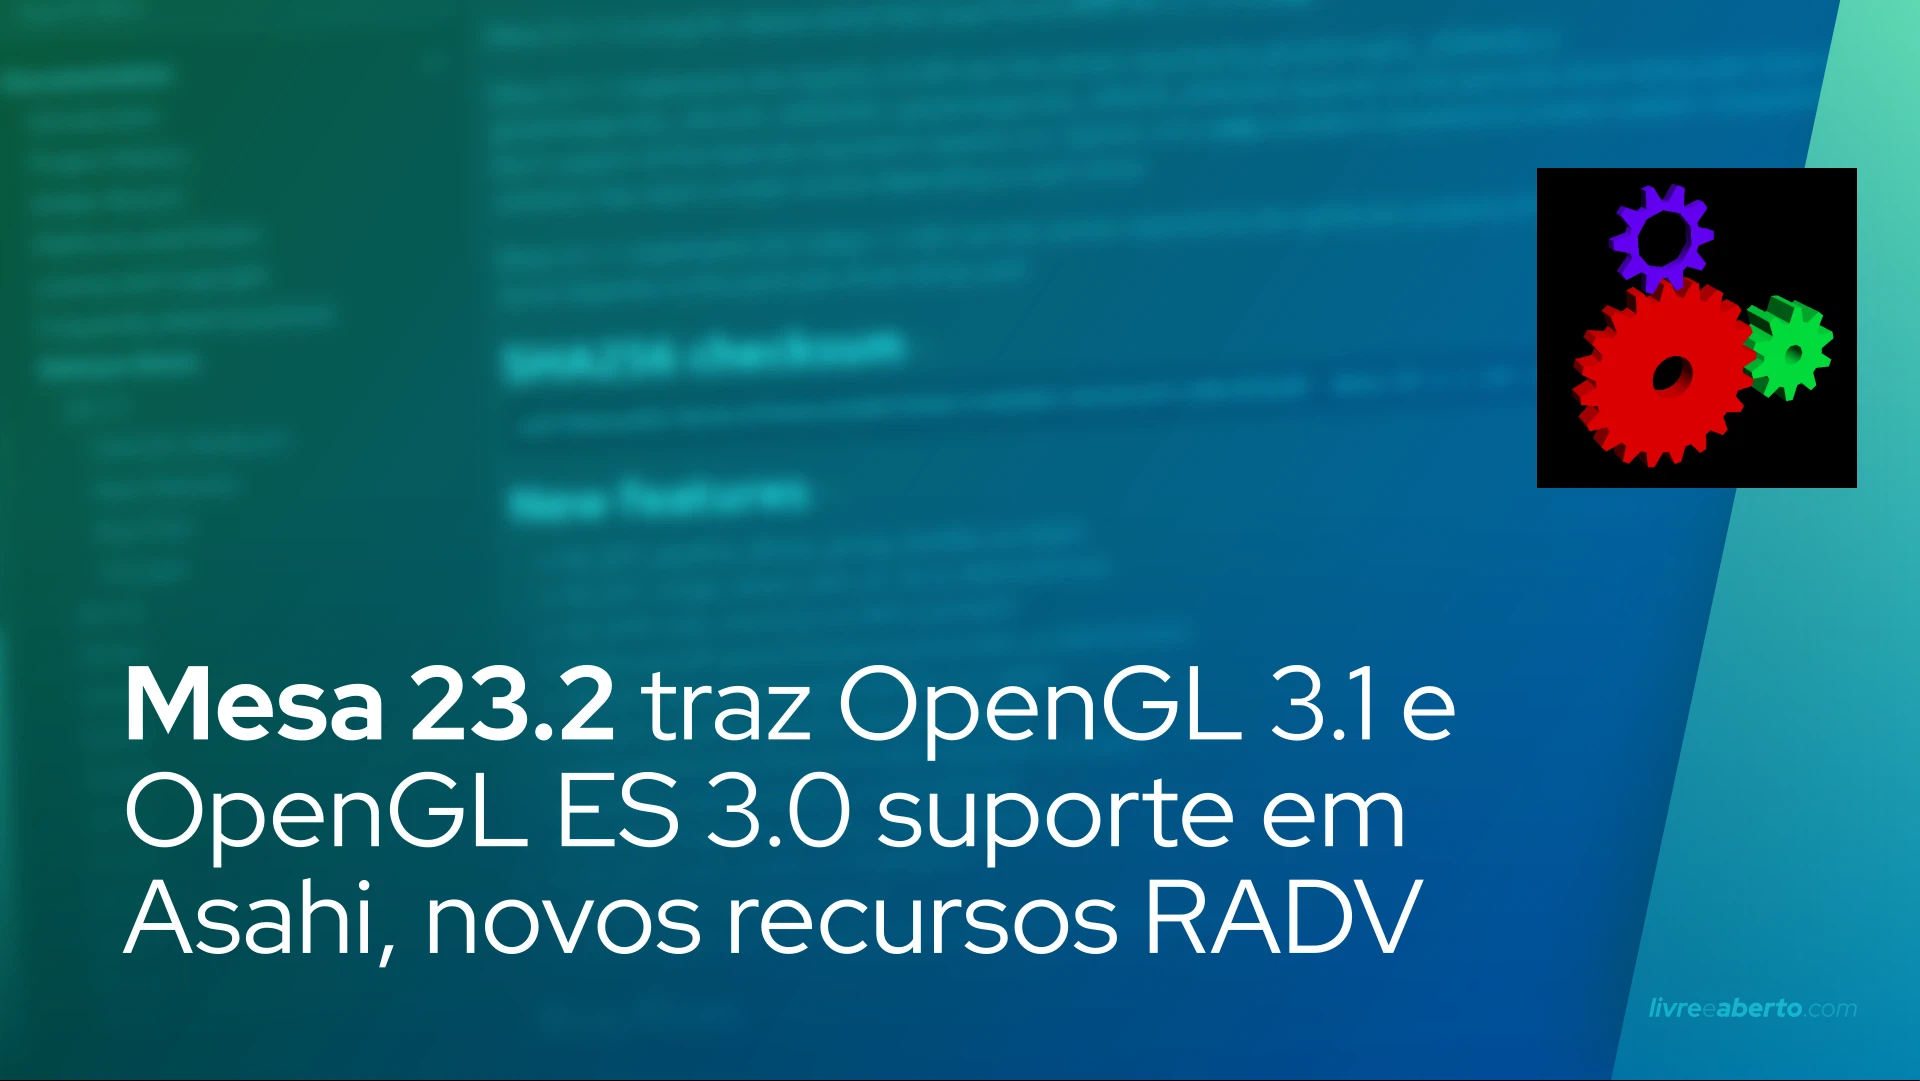 Mesa 23.2 traz OpenGL 3.1 e OpenGL ES 3.0 suporte em Asahi, novos recursos RADV